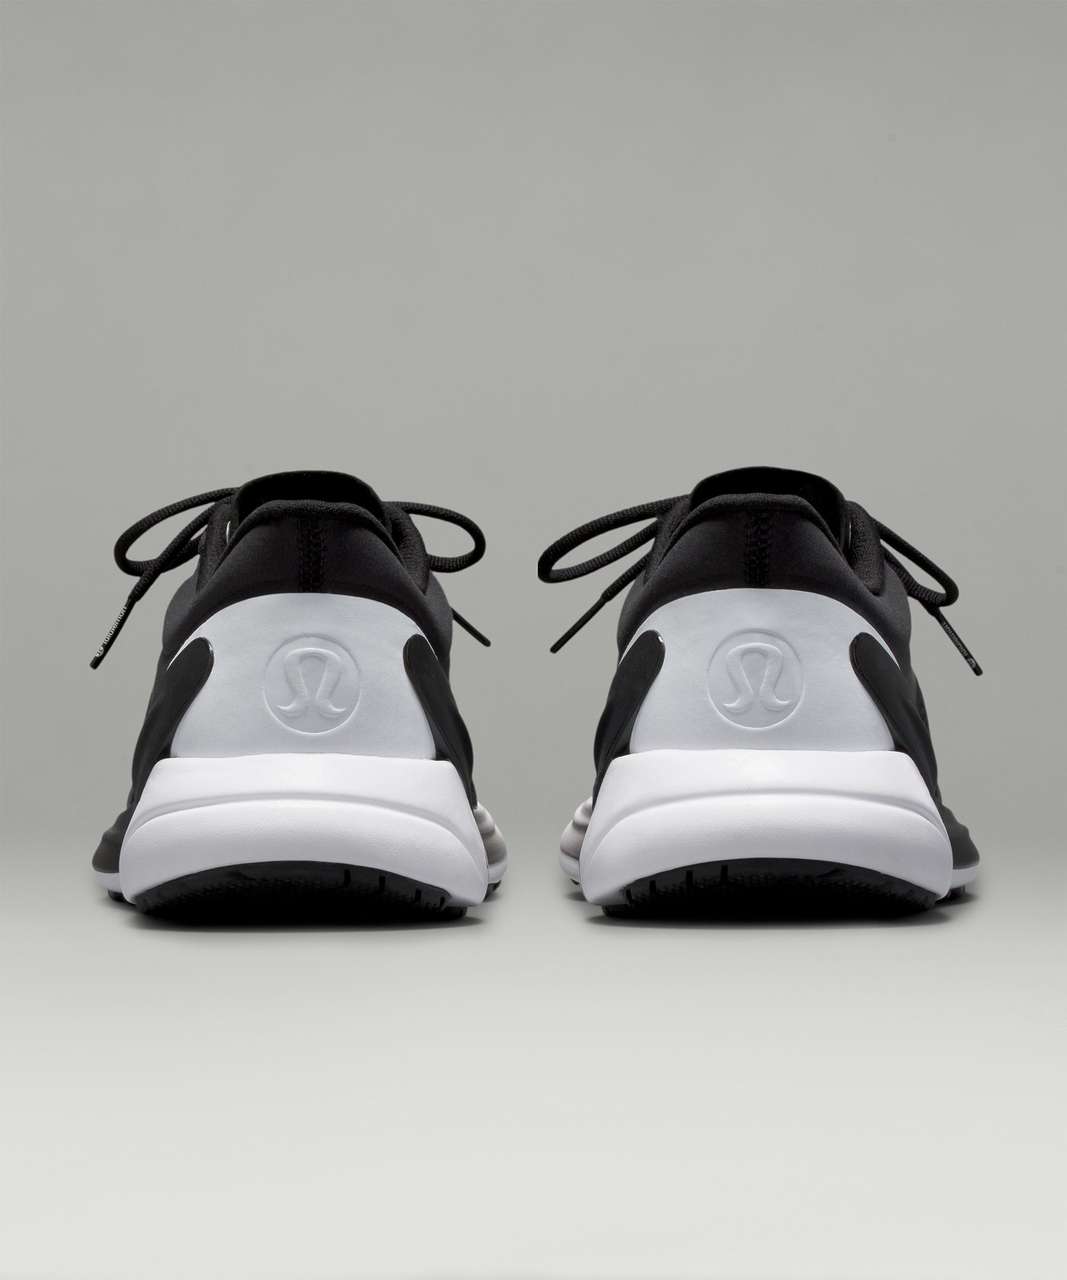 Lululemon Blissfeel Womens Running Shoe - Black / Black / White